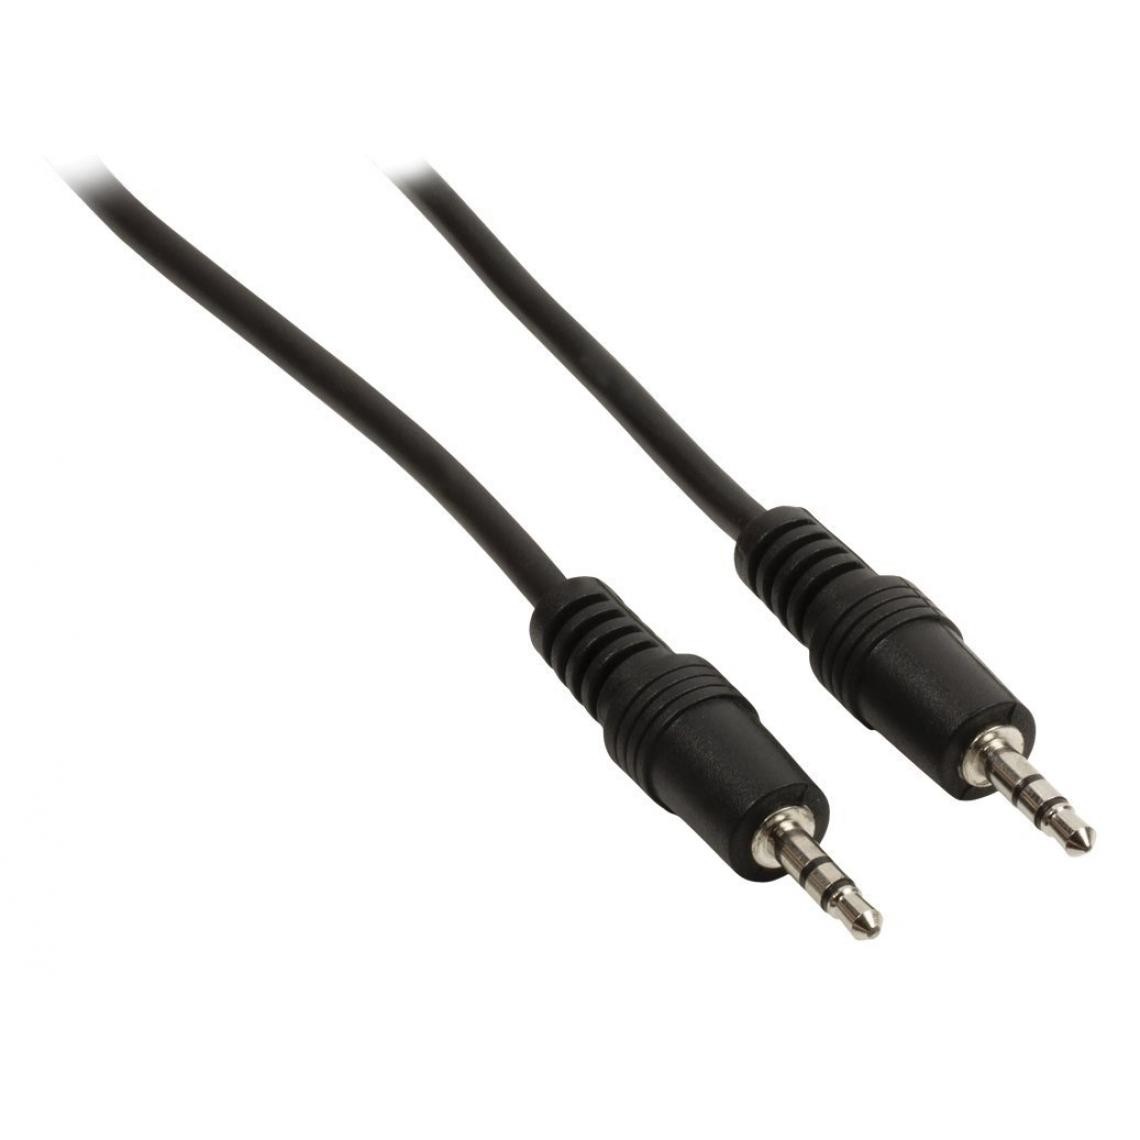 Ansell - Câble audio Jack 3,5 mm stéréo mâle vers Jack 3,5 mm mâle 5 m noir - accessoires cables meubles supports